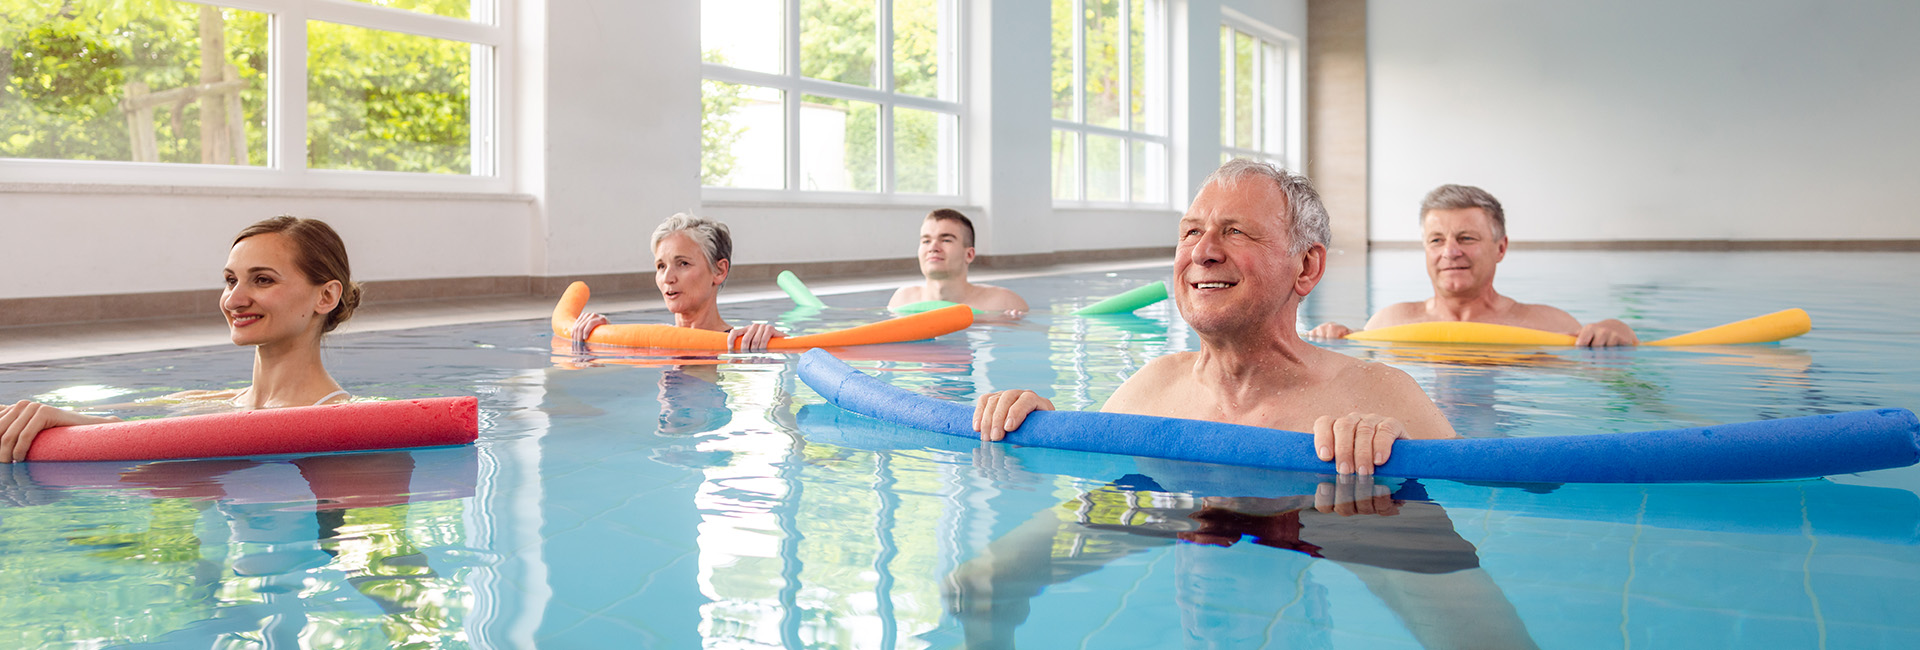 Kur: Ältere und jüngere Menschen im Schwimmbecken mit bunten Schwimmnudeln